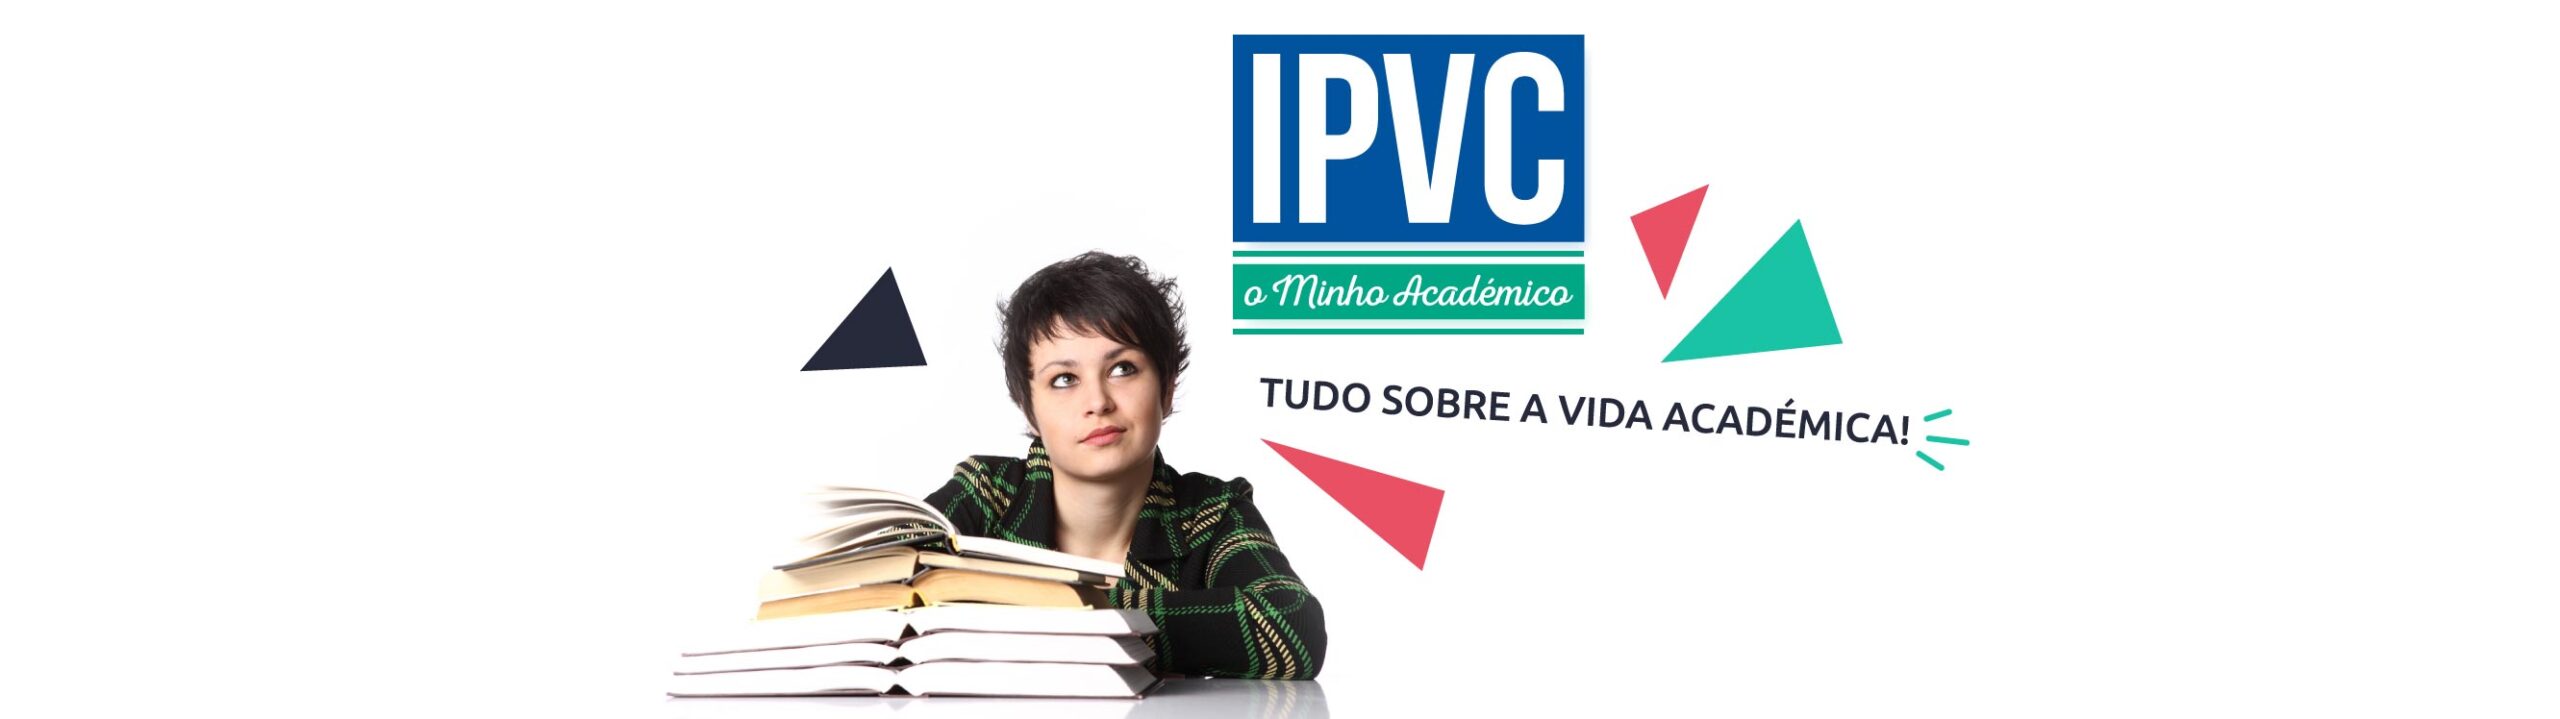 IPVC – O Minho Académico (Ed. 021)